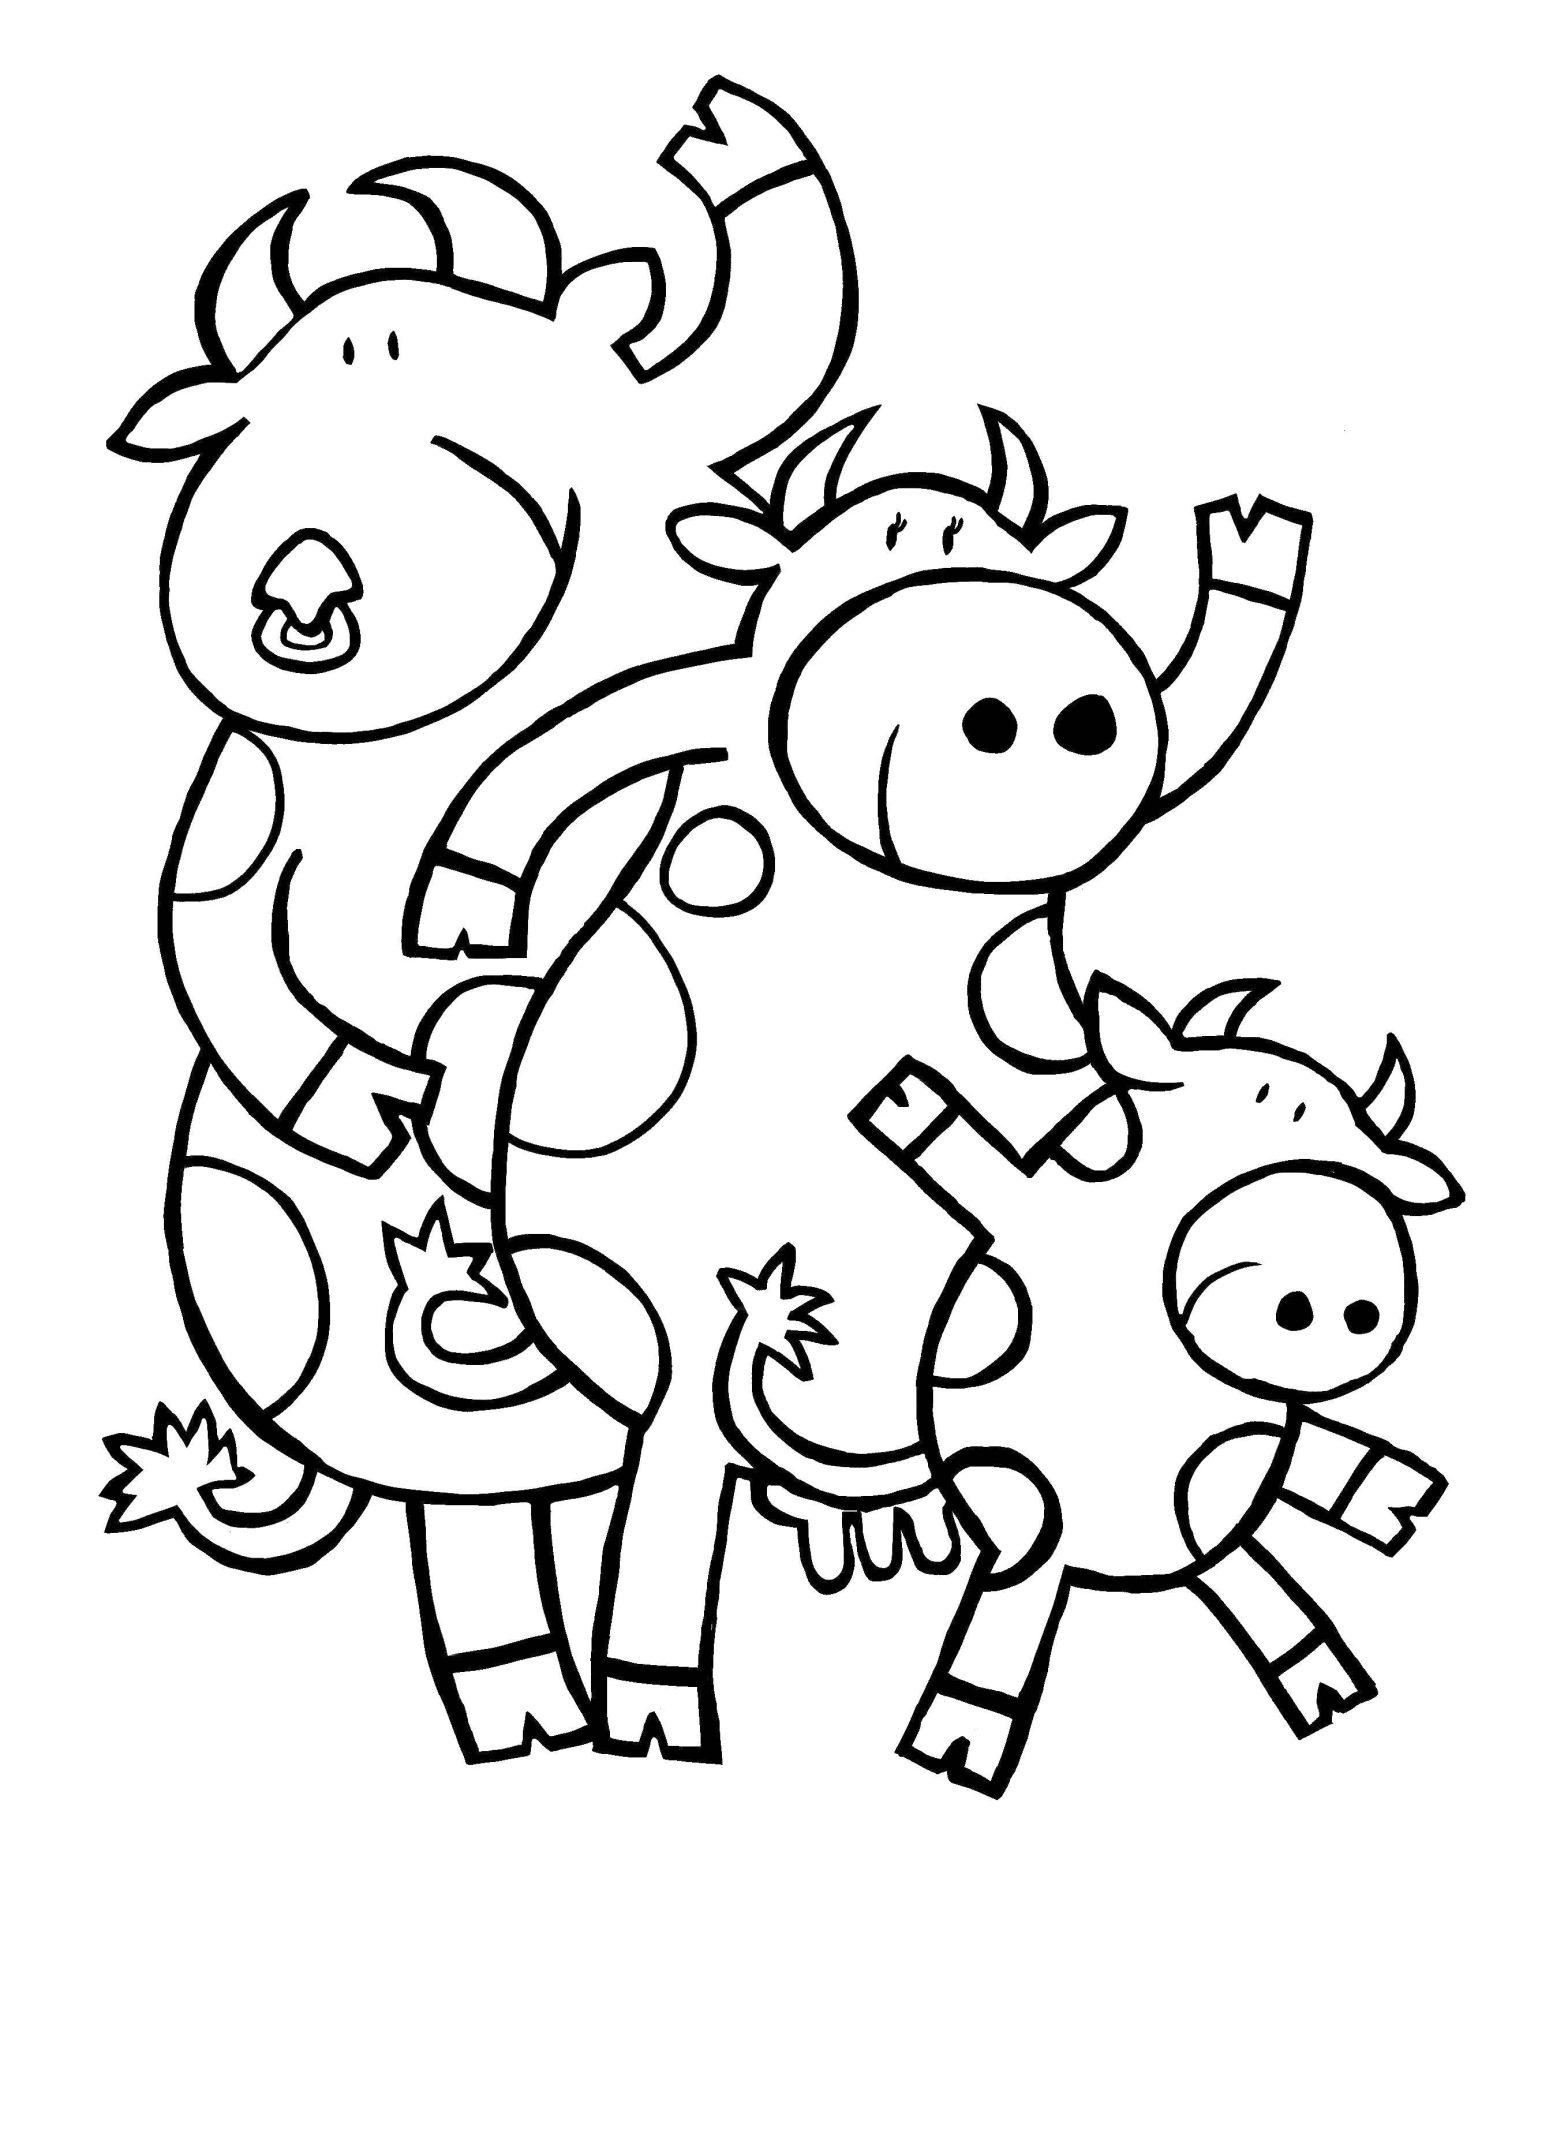 Раскраски для детей на тему Члены семьи: родители, дети (дети, семья, дети)